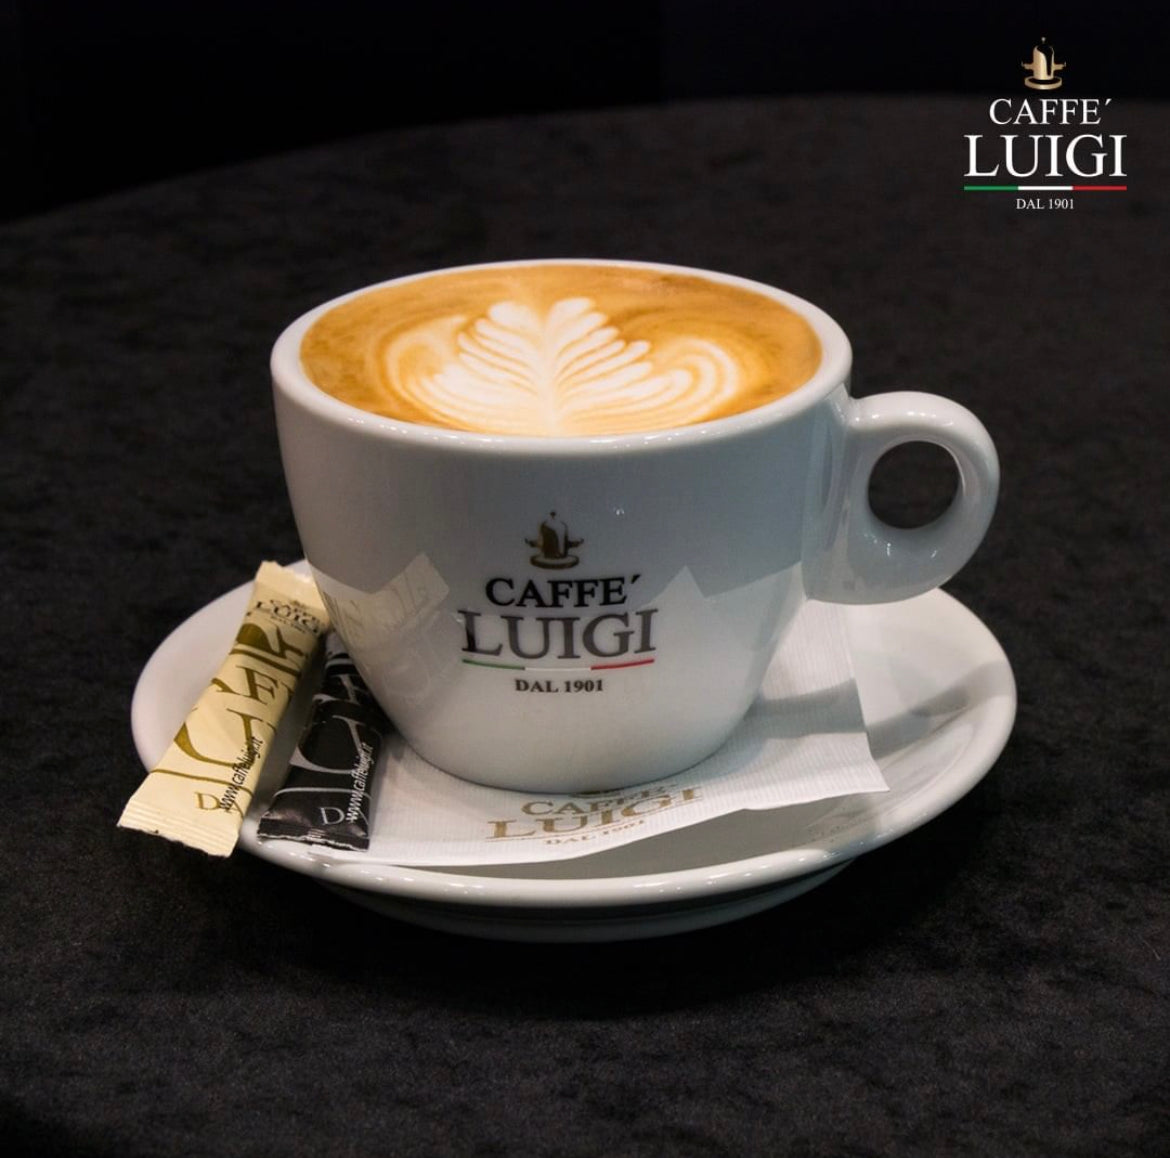 Espresso INTENSO Bohnen Beans 1Kg Caffe 'Luigi Arabica - Robusta Bohnen + 1 Cappuccino Tasse Klein